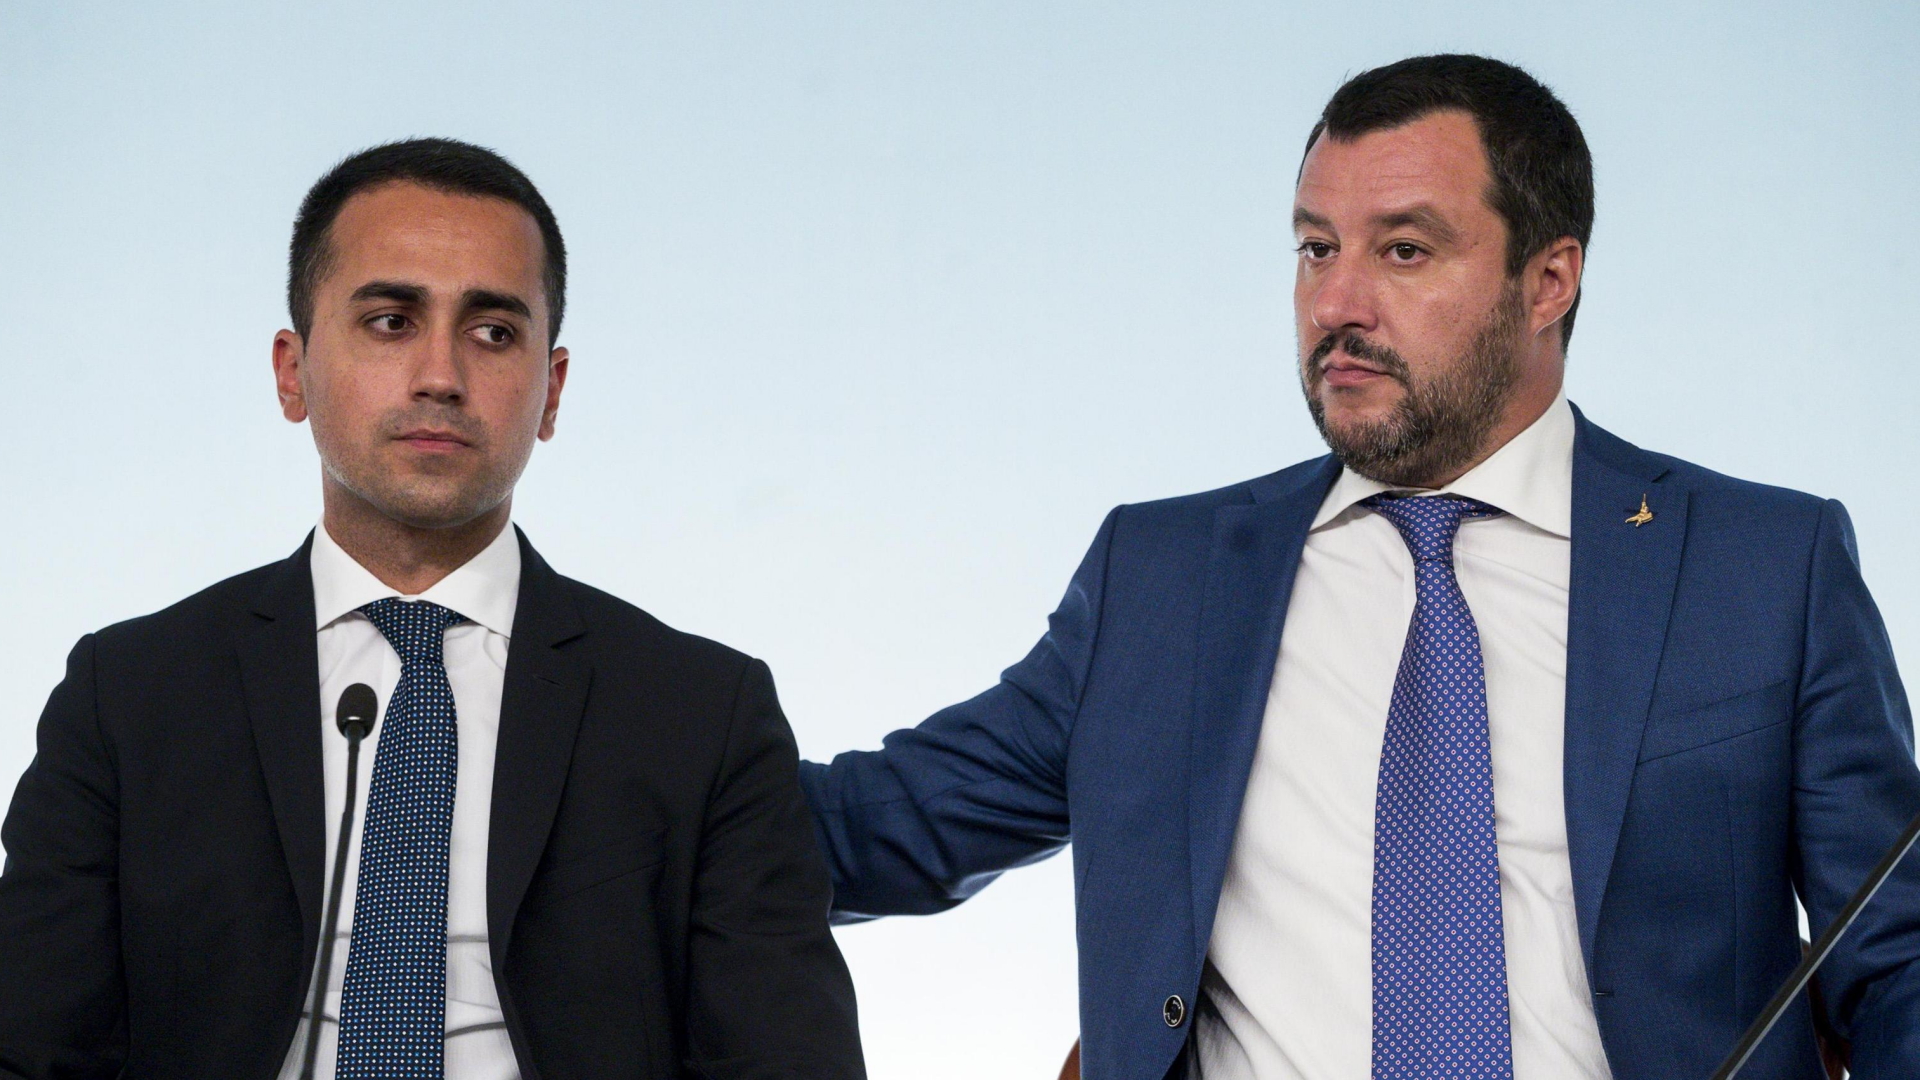 Die italienischen Minister di Maio und Salvini während einer Pressekonferenz. | dpa